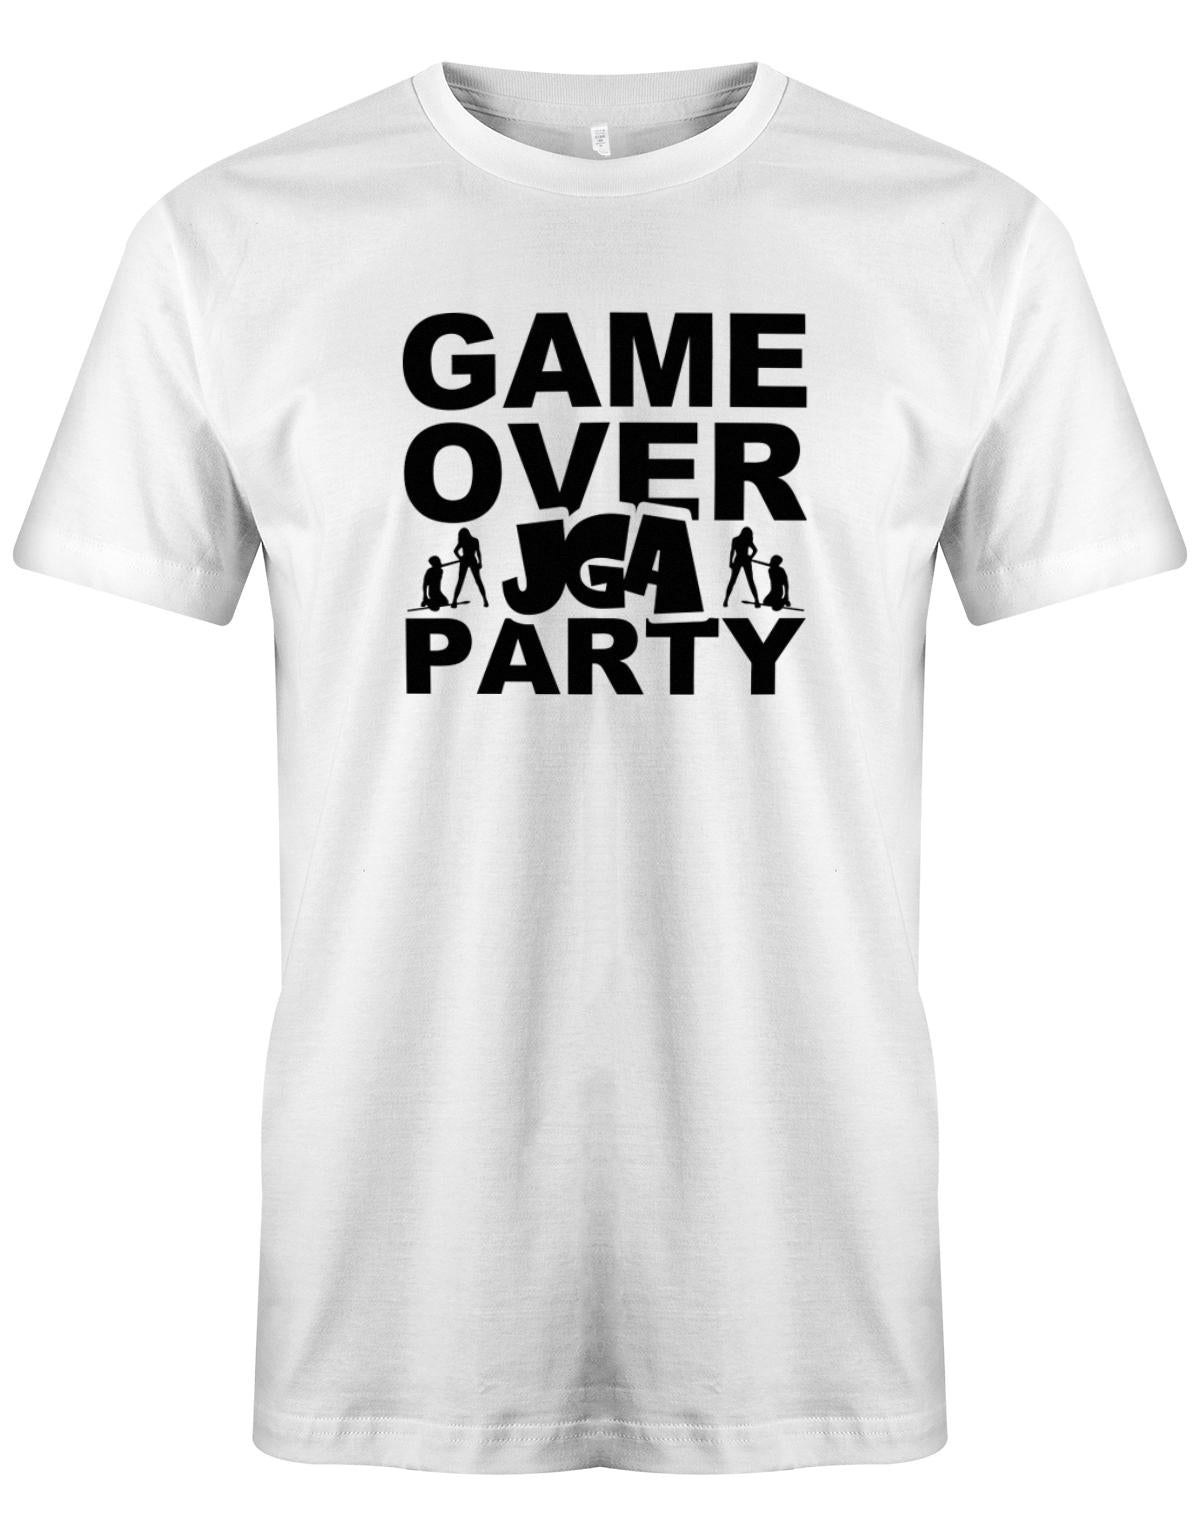 Game-Over-JGA-Party-Herren-Shirt-Weiss